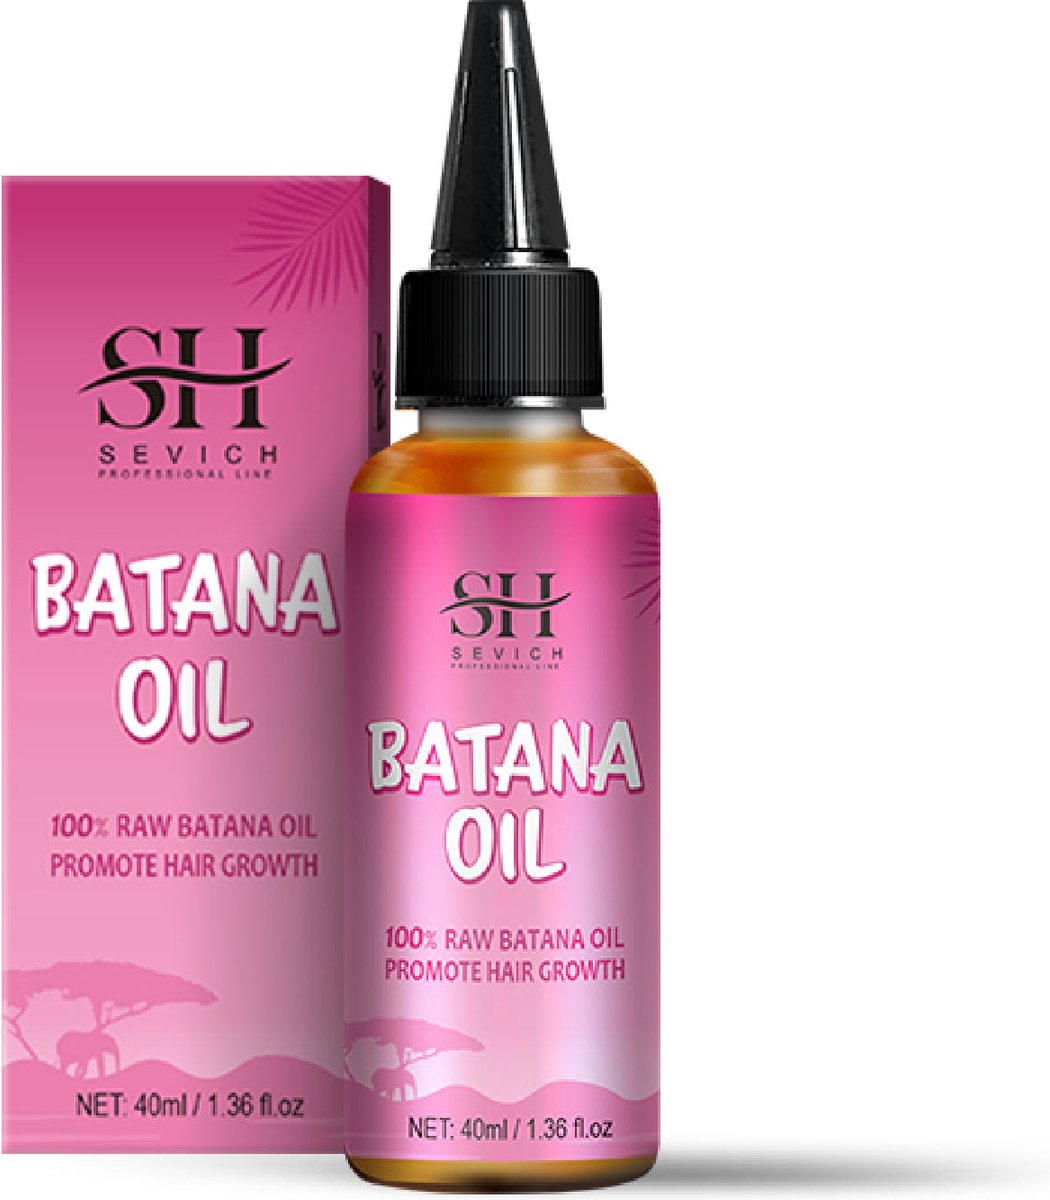 Huile de batana biologique pour des cheveux sains, crème capillaire batana  100% pure huile naturelle de batana pour la croissance des cheveux